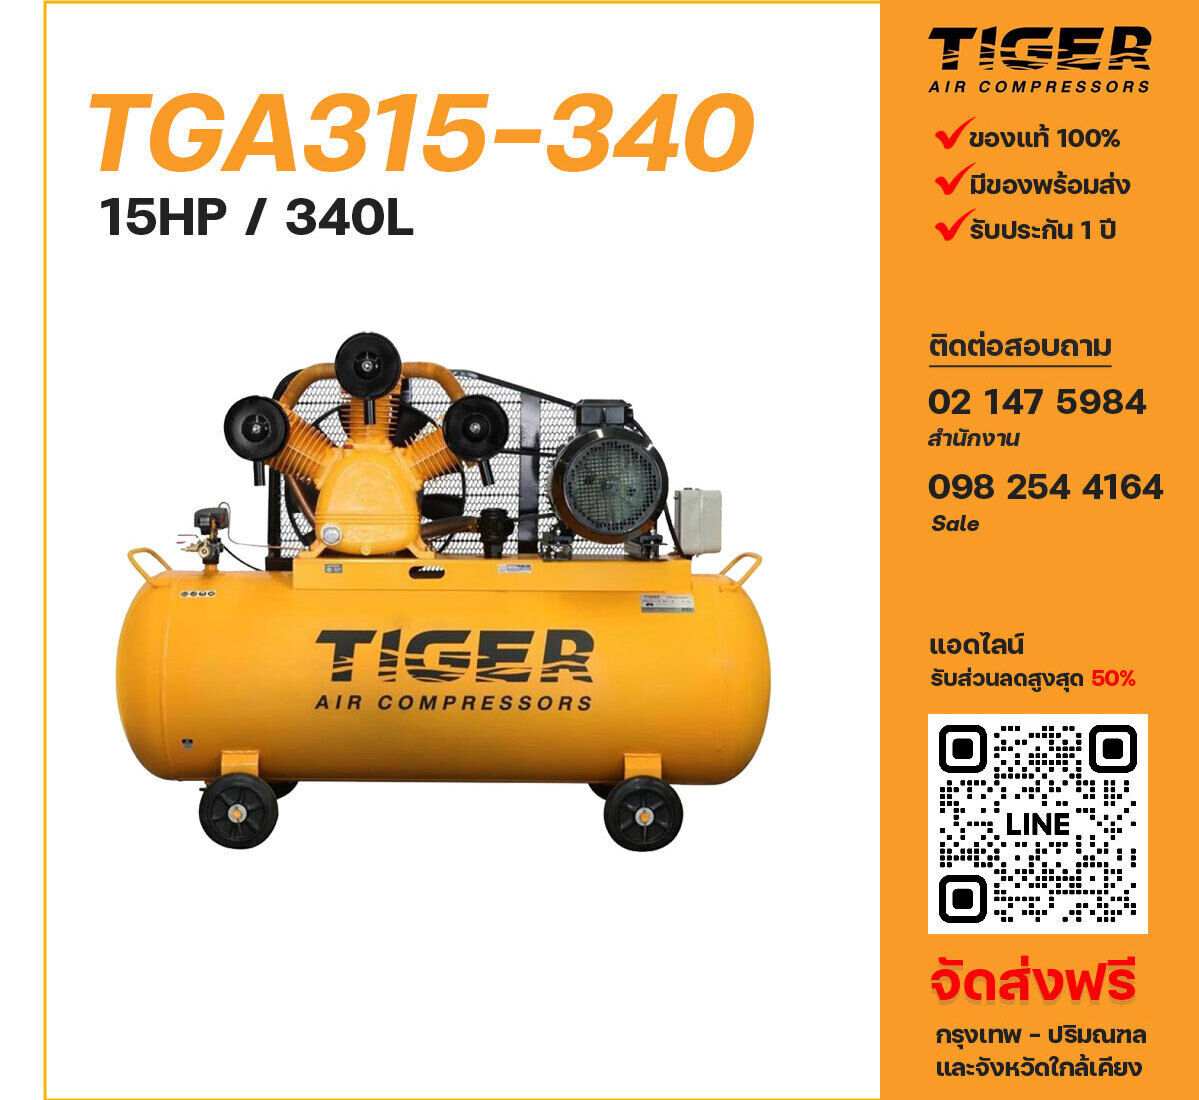 ปั๊มลมไทเกอร์ TIGER TGA315-340 380V ปั๊มลมลูกสูบ ขนาด 3 สูบ 15 แรงม้า 340 ลิตร TIGER พร้อมมอเตอร์ ไฟ 380V ส่งฟรี กรุงเทพฯ-ปริมณฑล รับประกัน 1 ปี